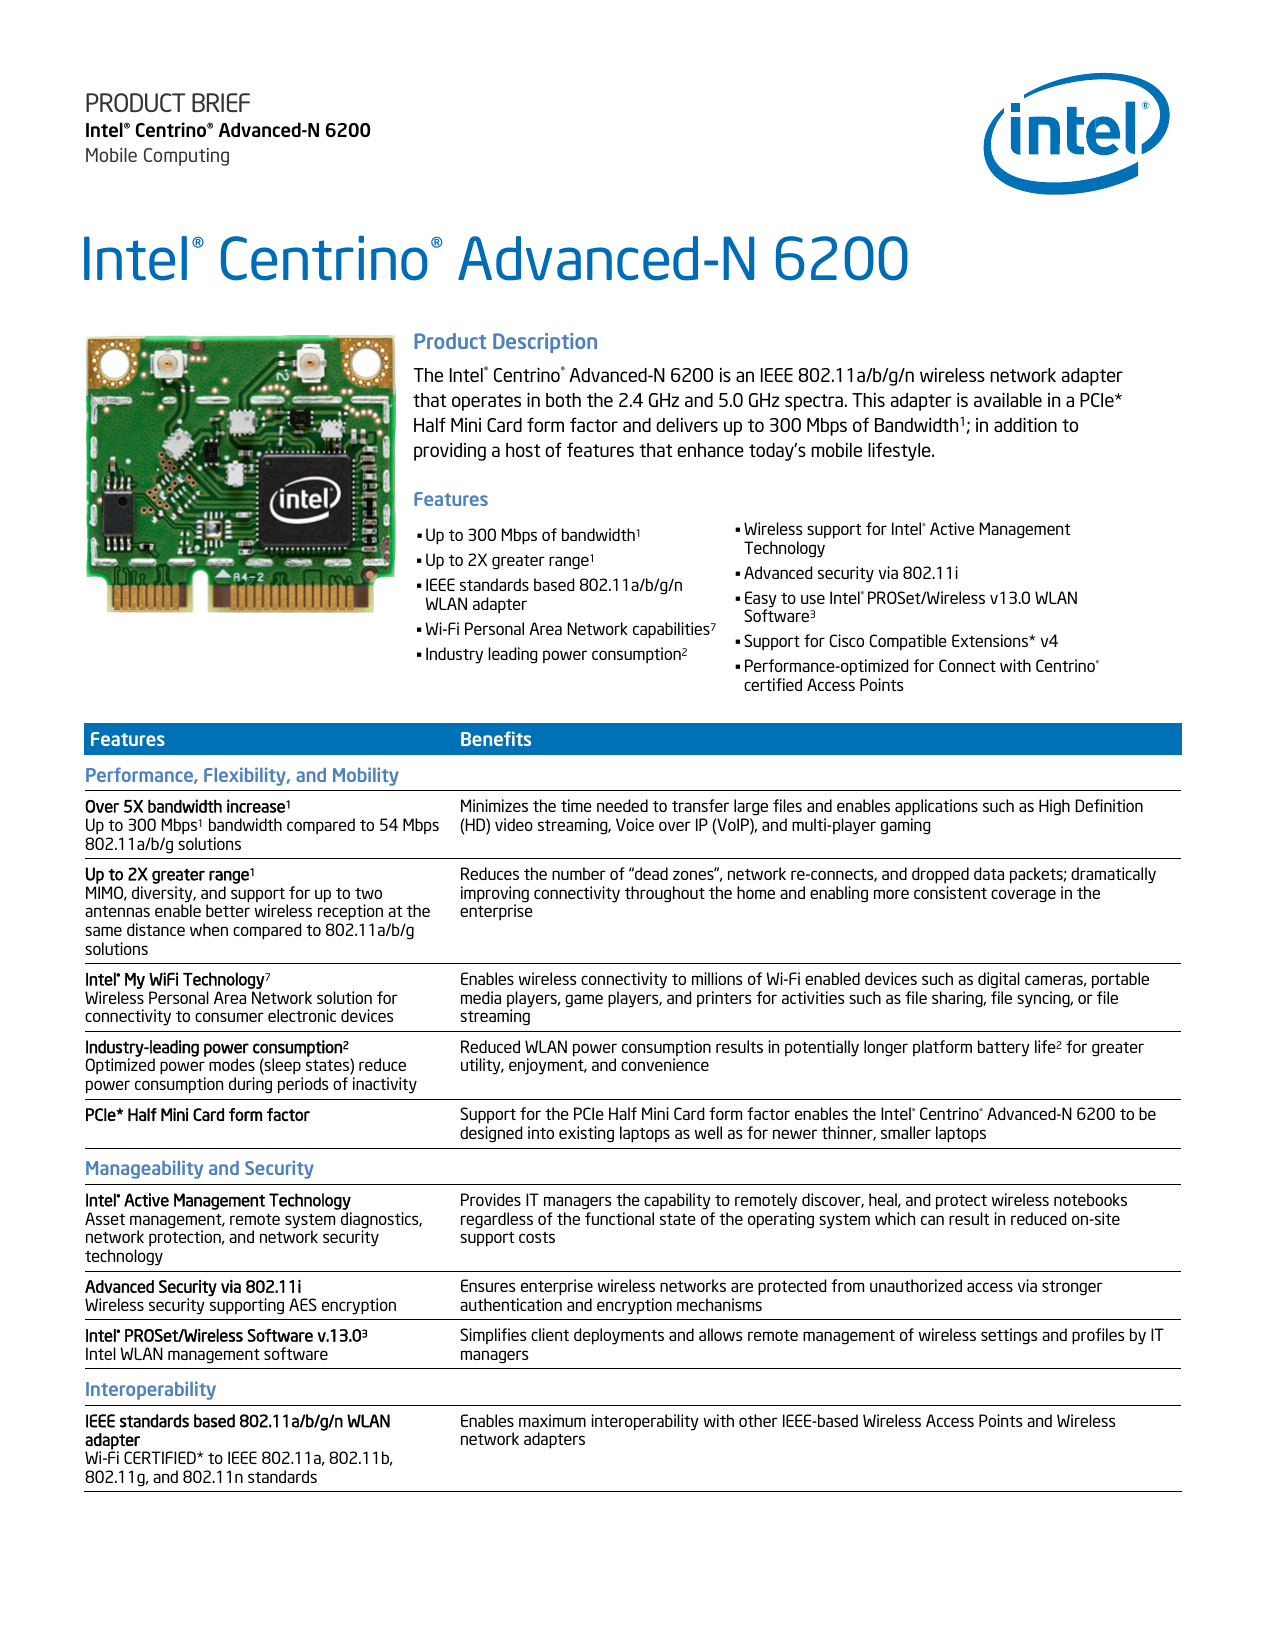 download intel centrino advanced n 6205 driver